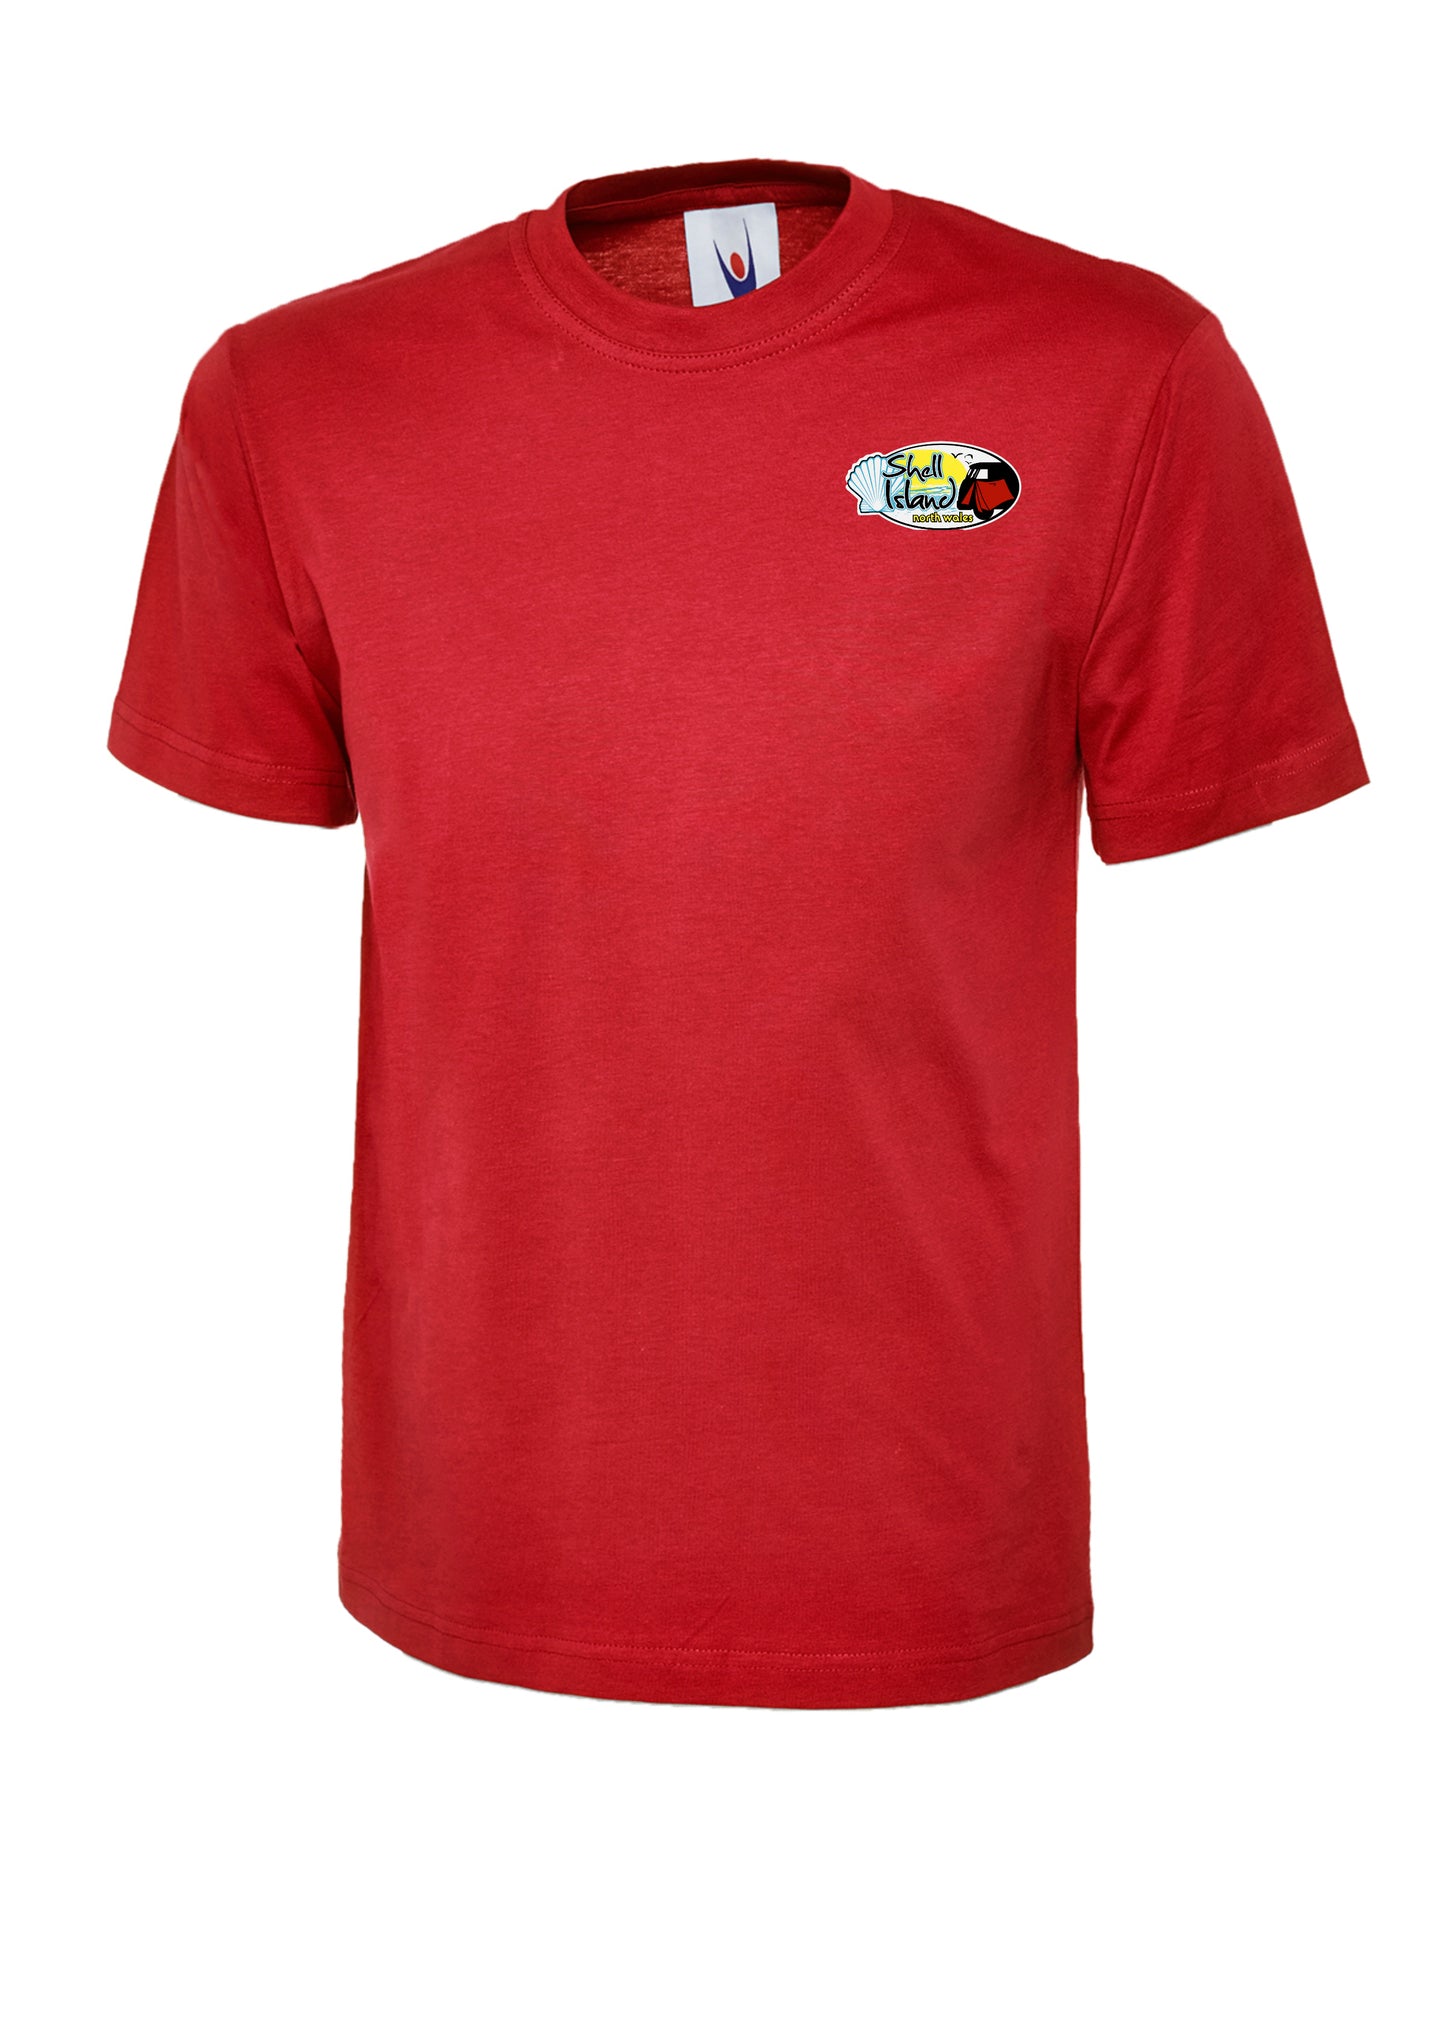 Children's Shell Island logo short sleeved t-shirt